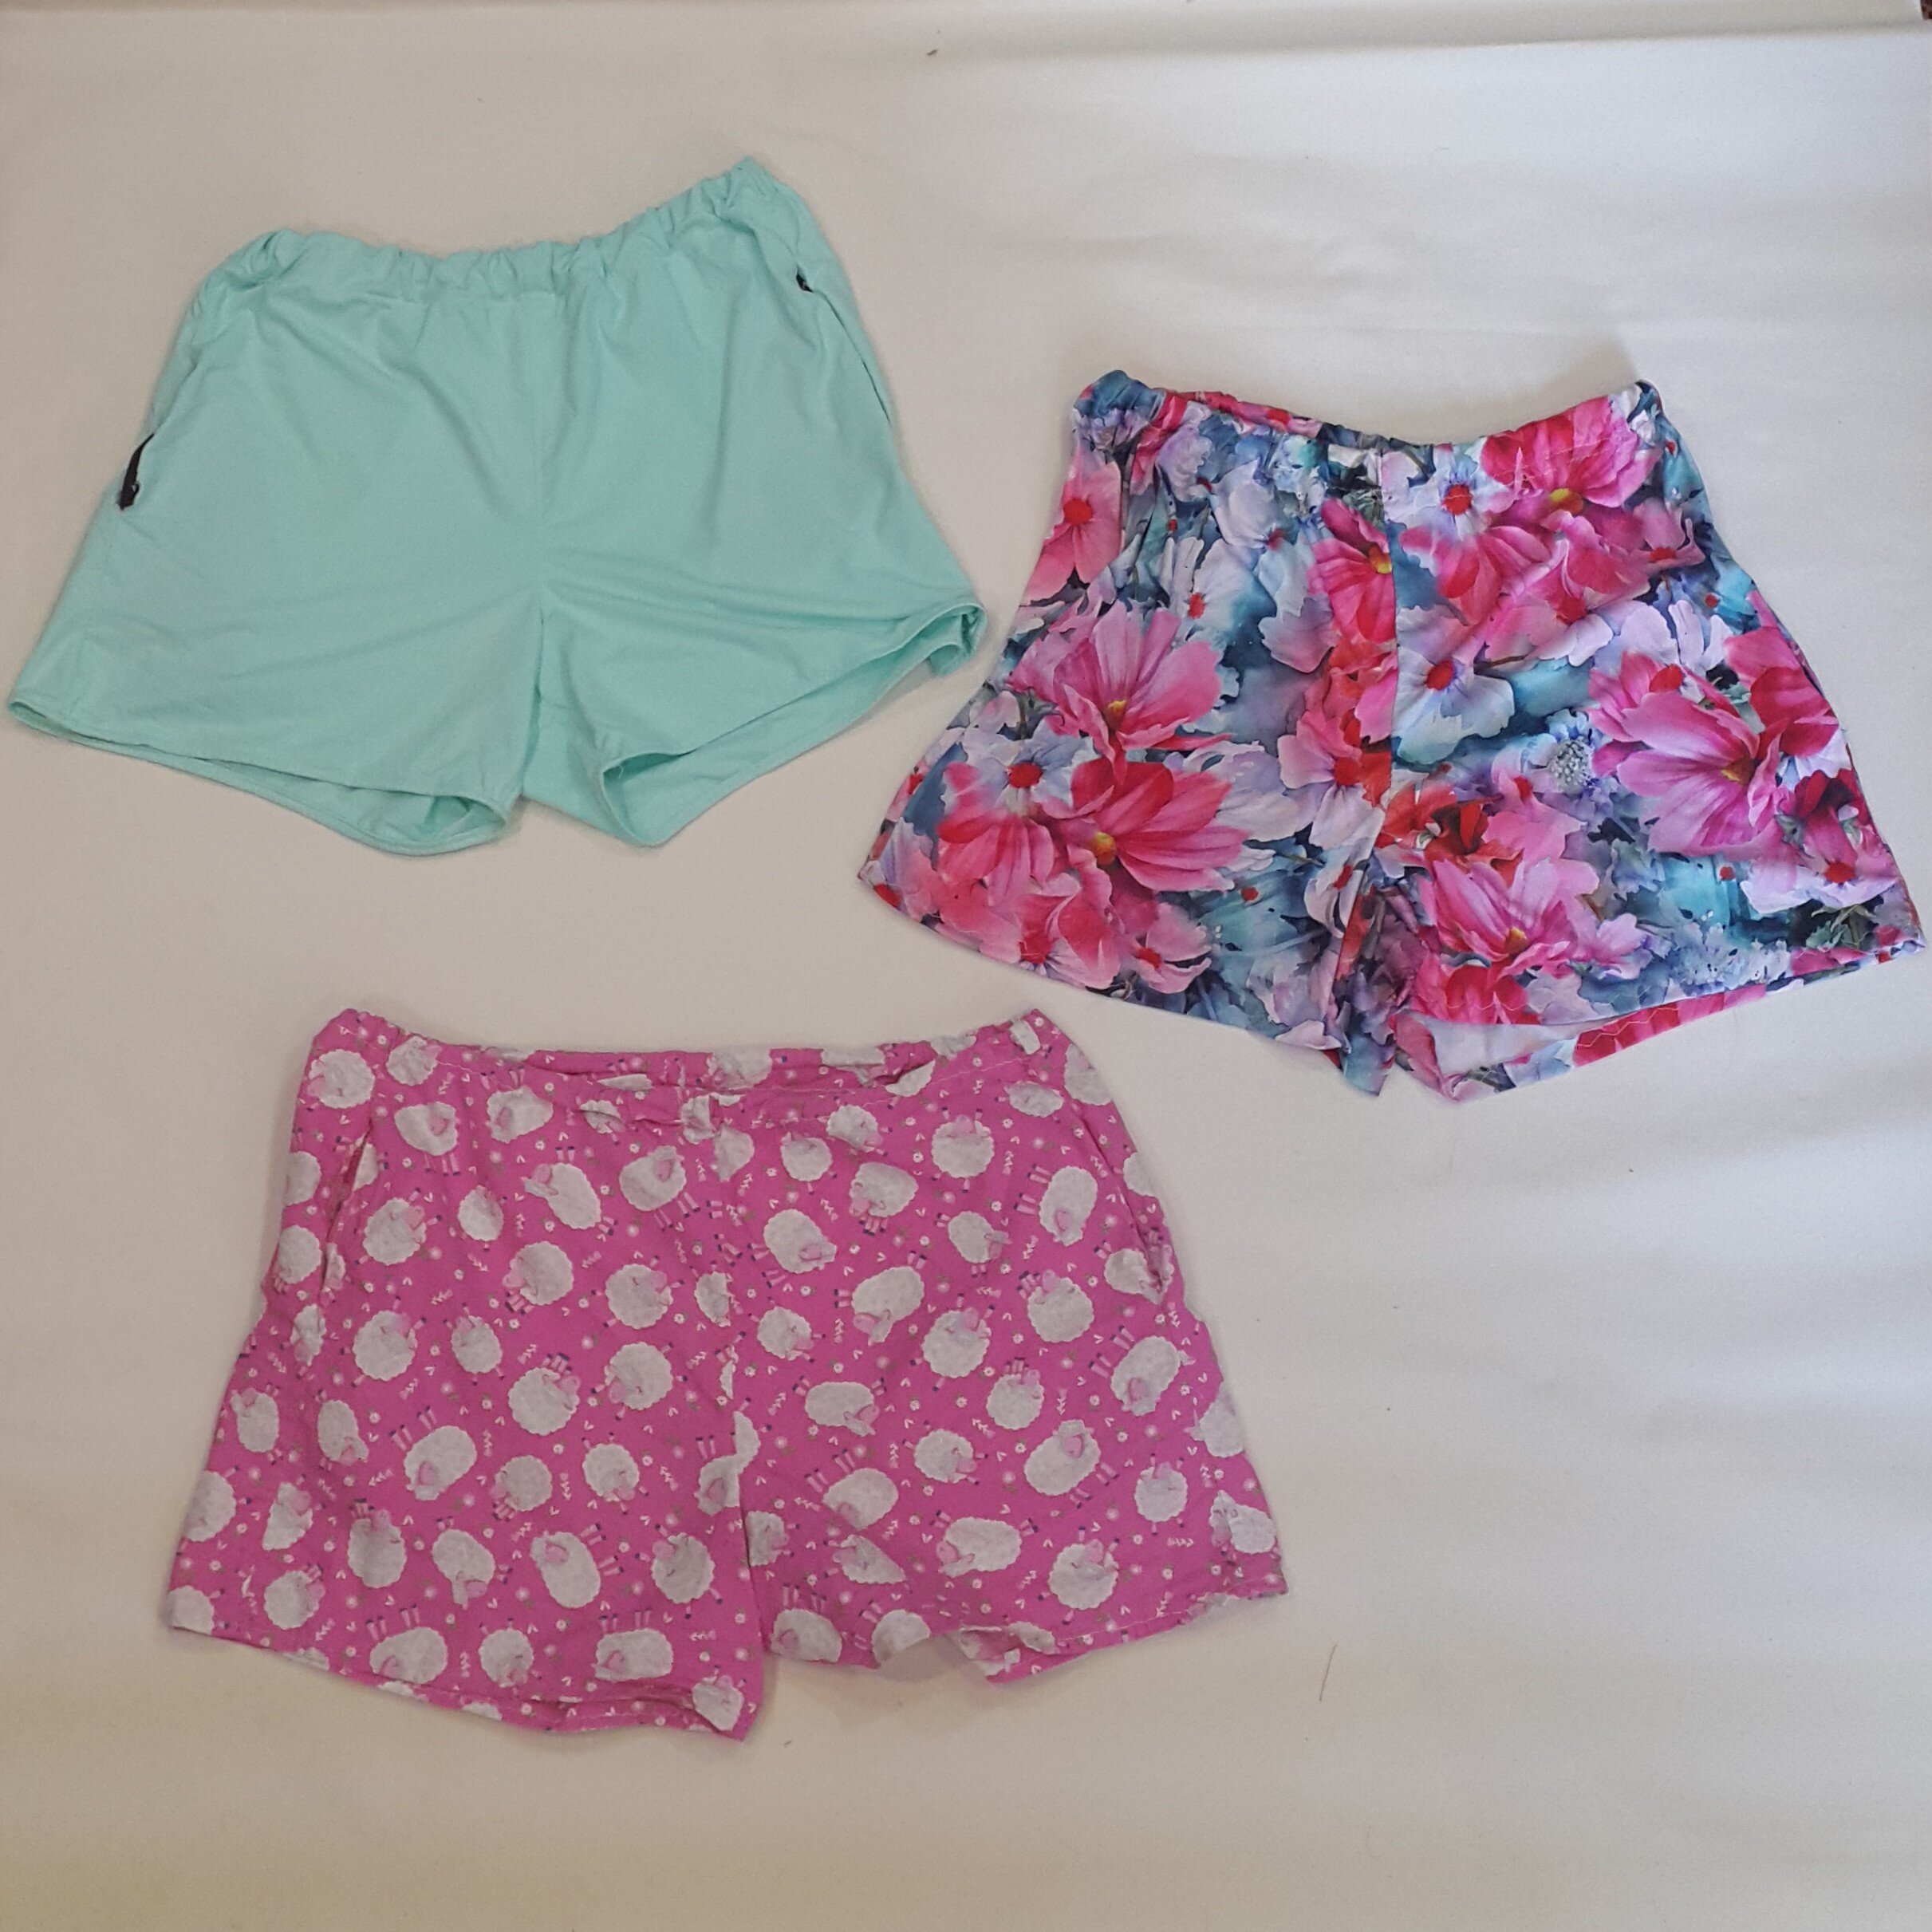 Three pairs of shorts